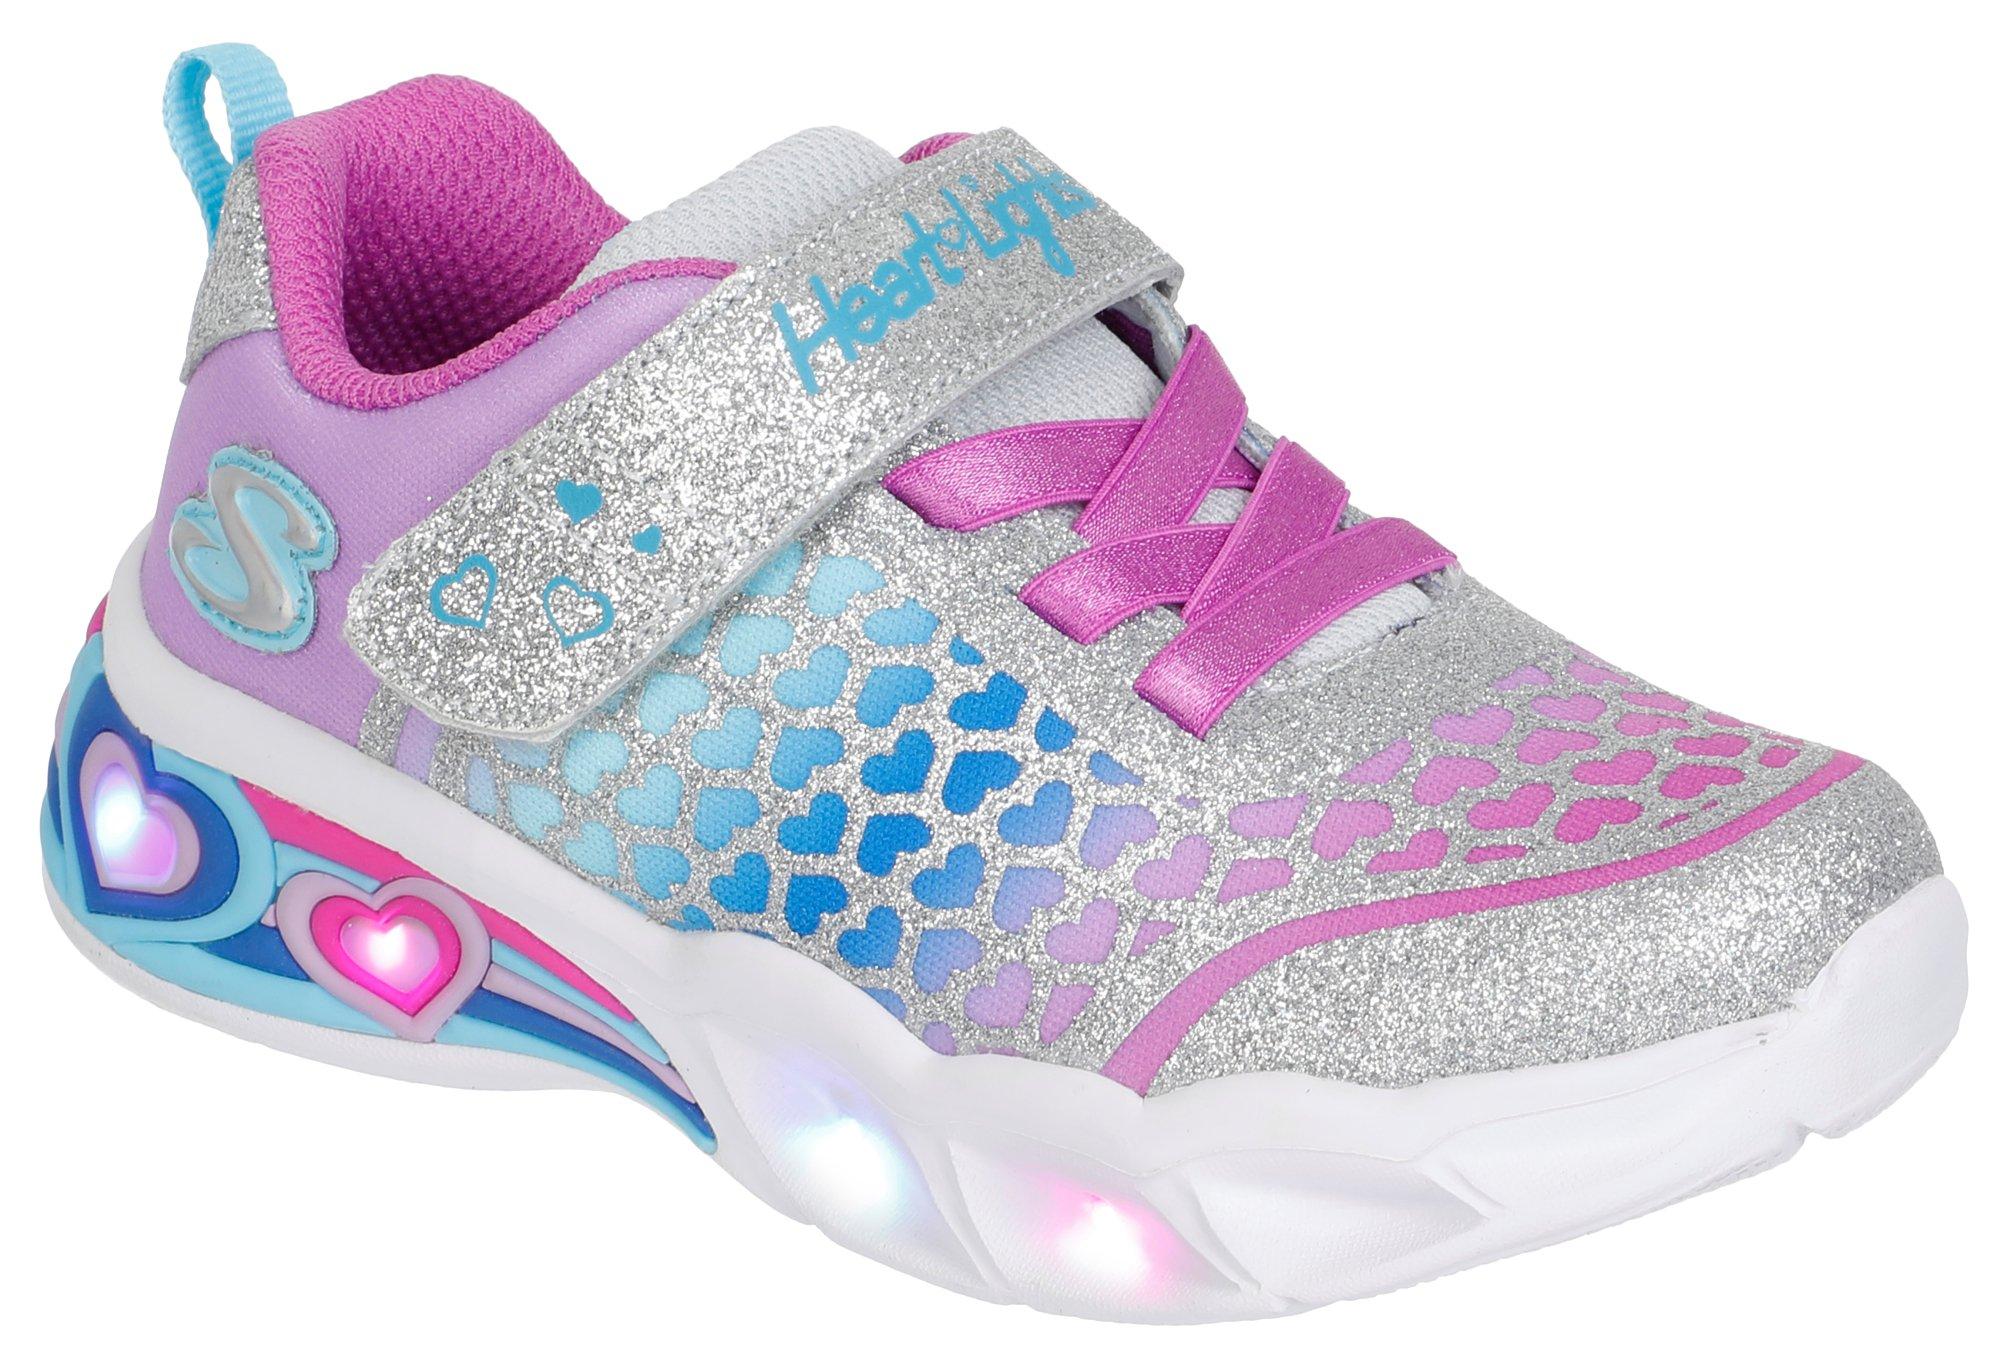 Toddler Girls Glitter Light-Up Sneakers - Multi